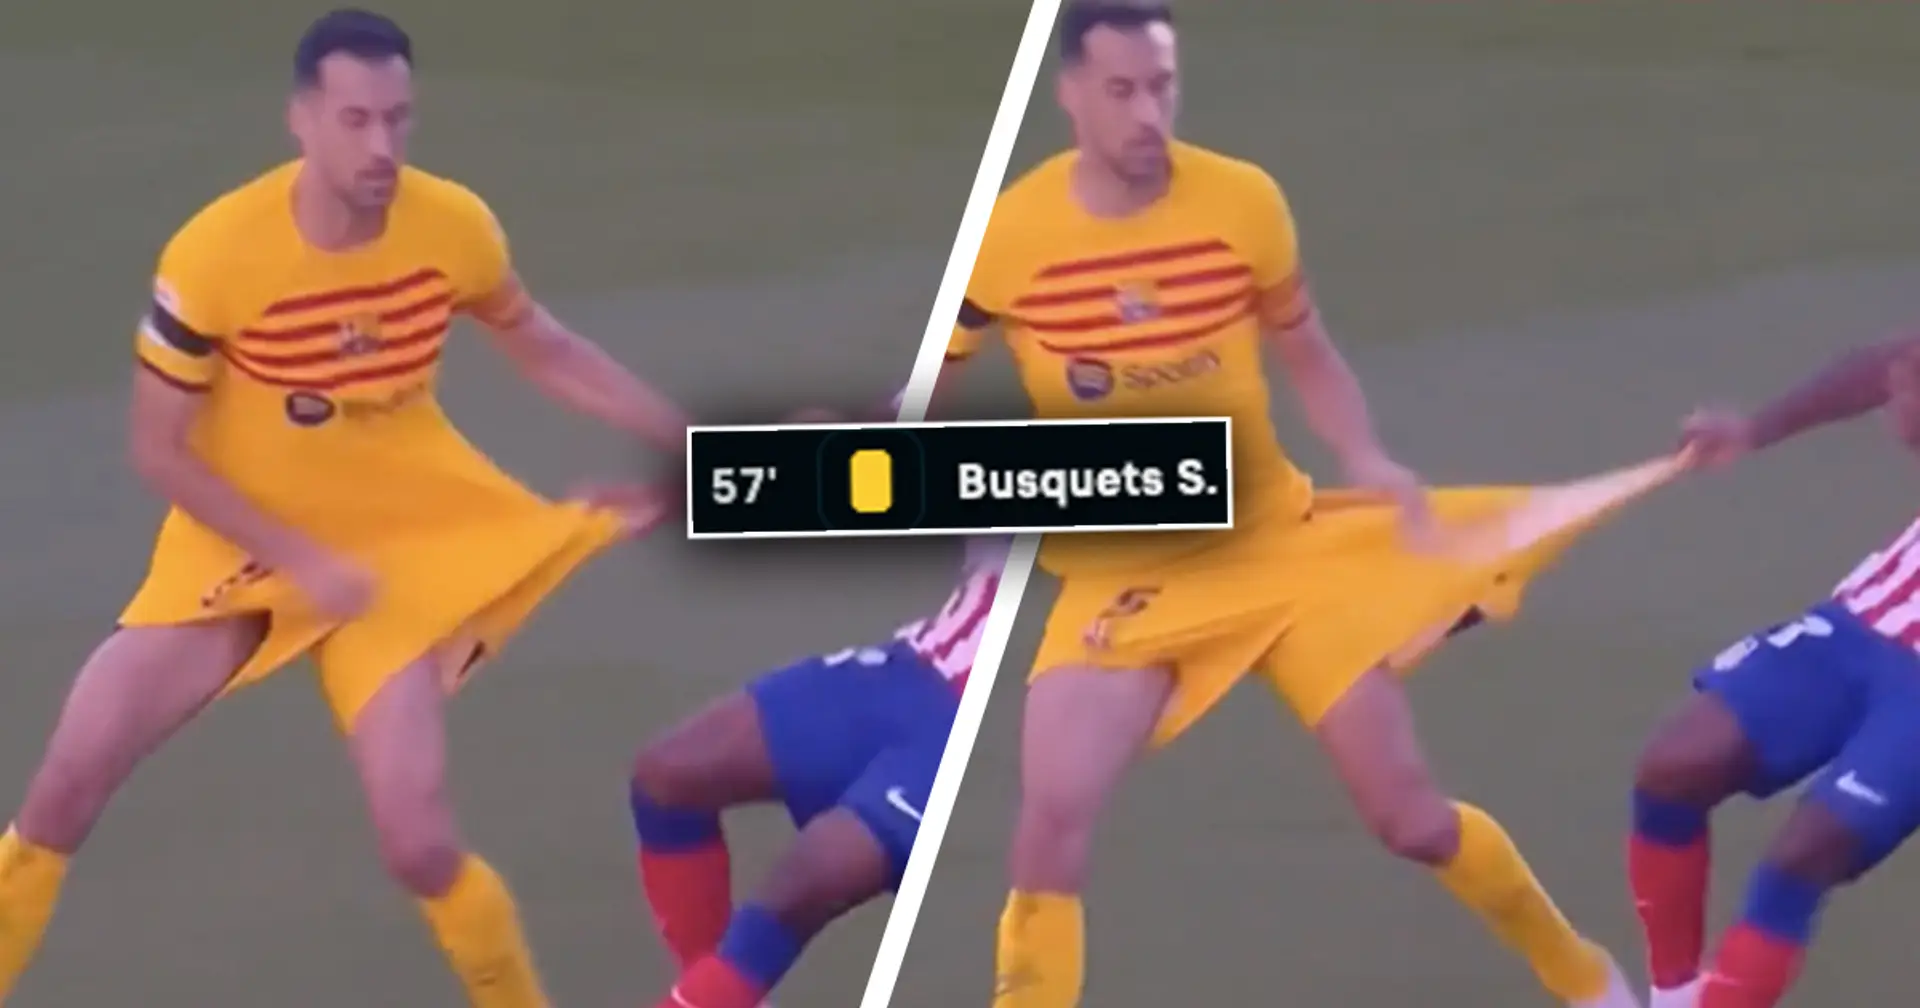 Captado en cámara: Lemar le arranca los pantalones a Busquets, el veterano del Barça recibe una amarilla